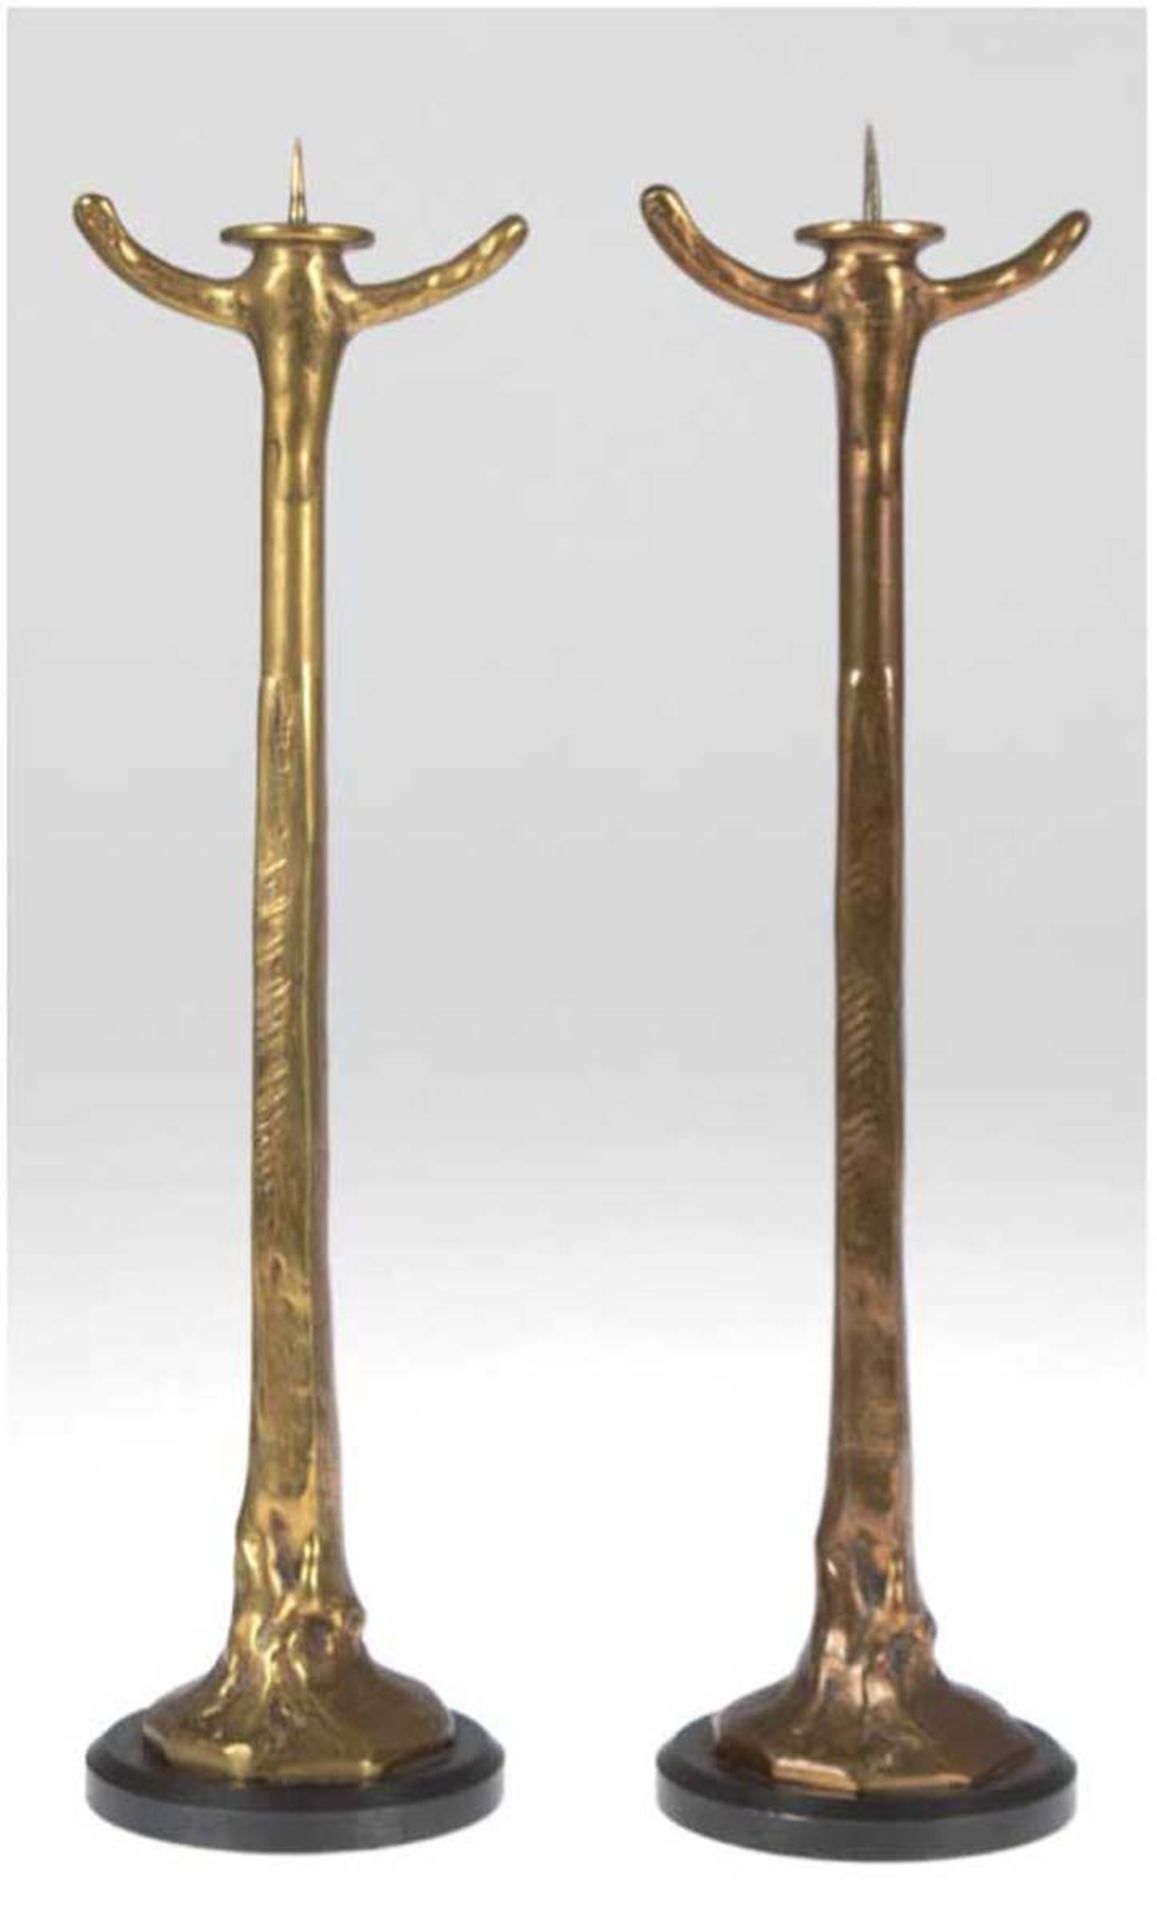 Paar Leuchter, 1-kerzig, Bronze kupfer- und messingfarbend, auf rundem Metallfuß, H. 35,5cm